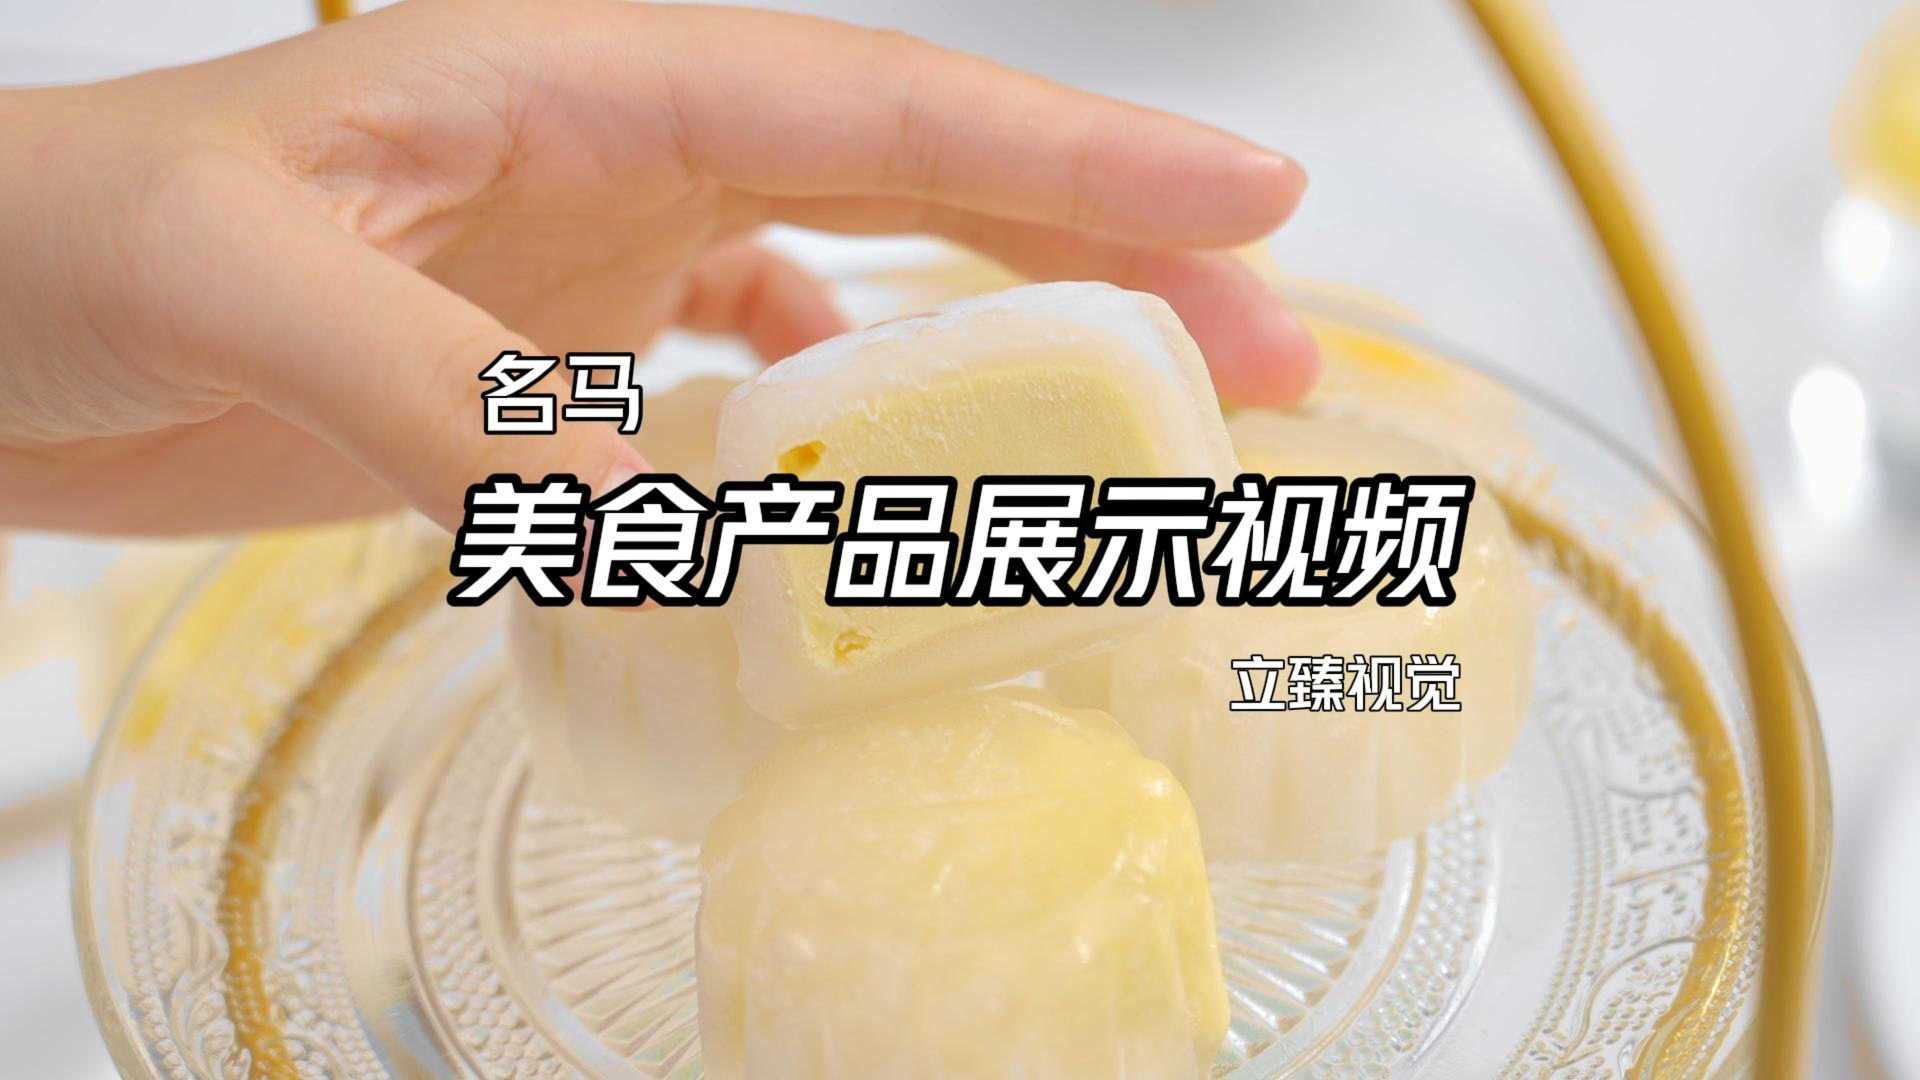 深圳美食名马猫山王榴莲月饼宣传视频